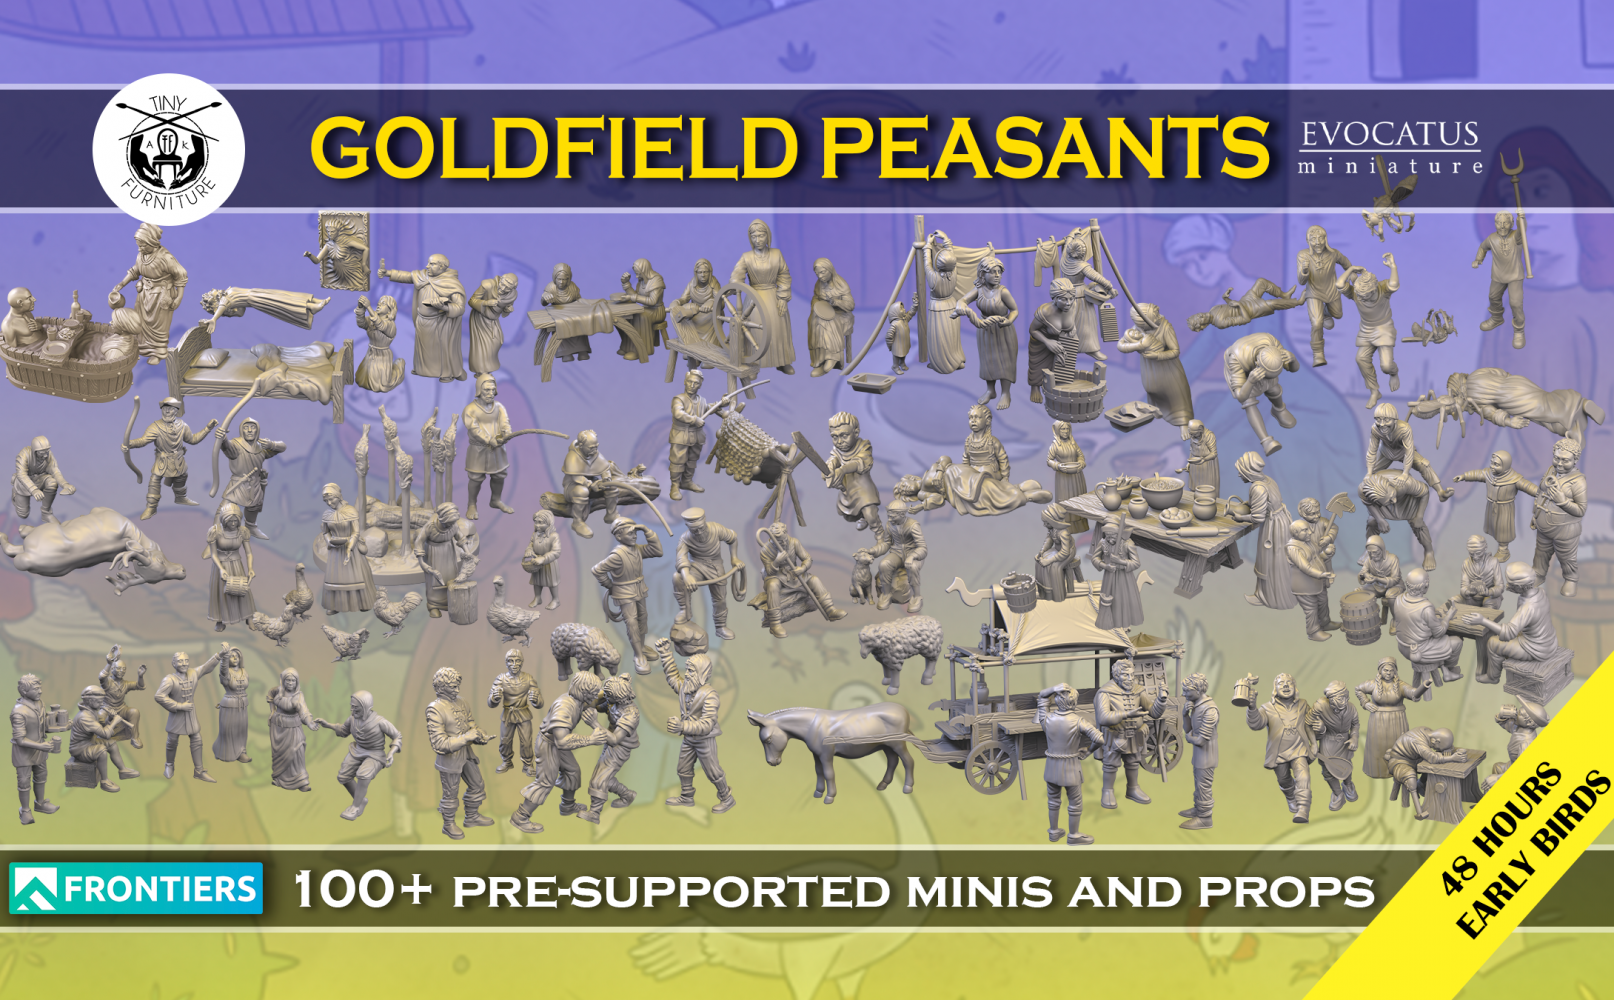 Goldfield Medieval Peasants